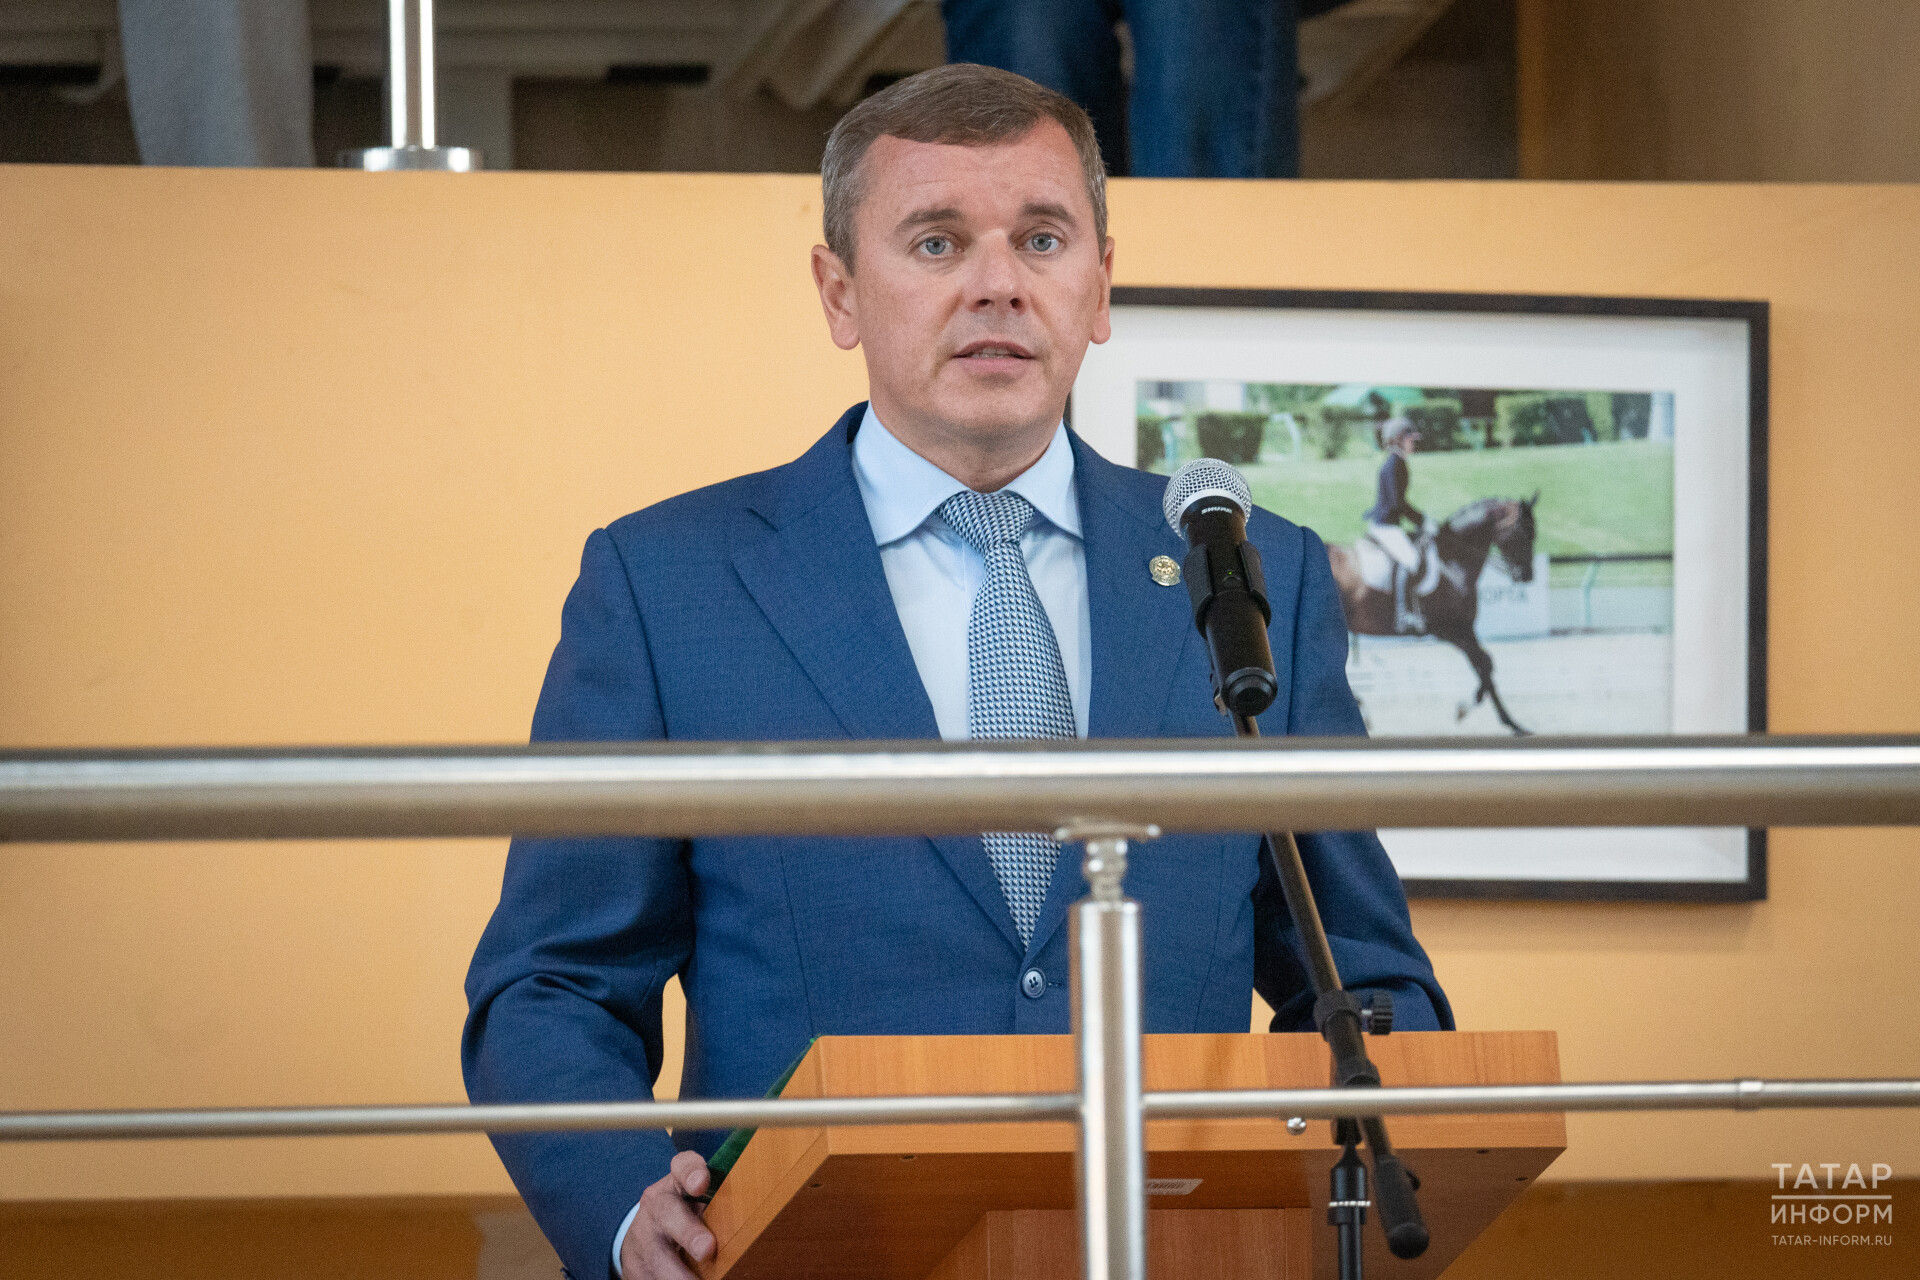 Зяббаров: Благодаря цифровизации АПК в экономику удалось вовлечь 3,5 млрд рублей